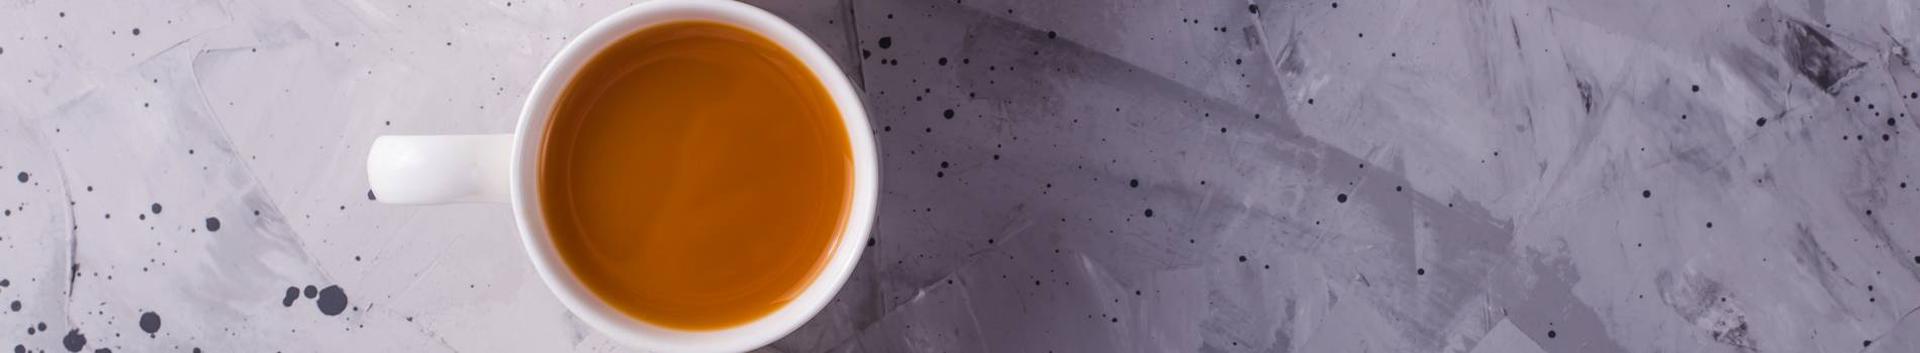 chaidla chai võimaldab valmistada pariamt chai teed kohvikus või kodus kasutades ainult värskeimat toorainet